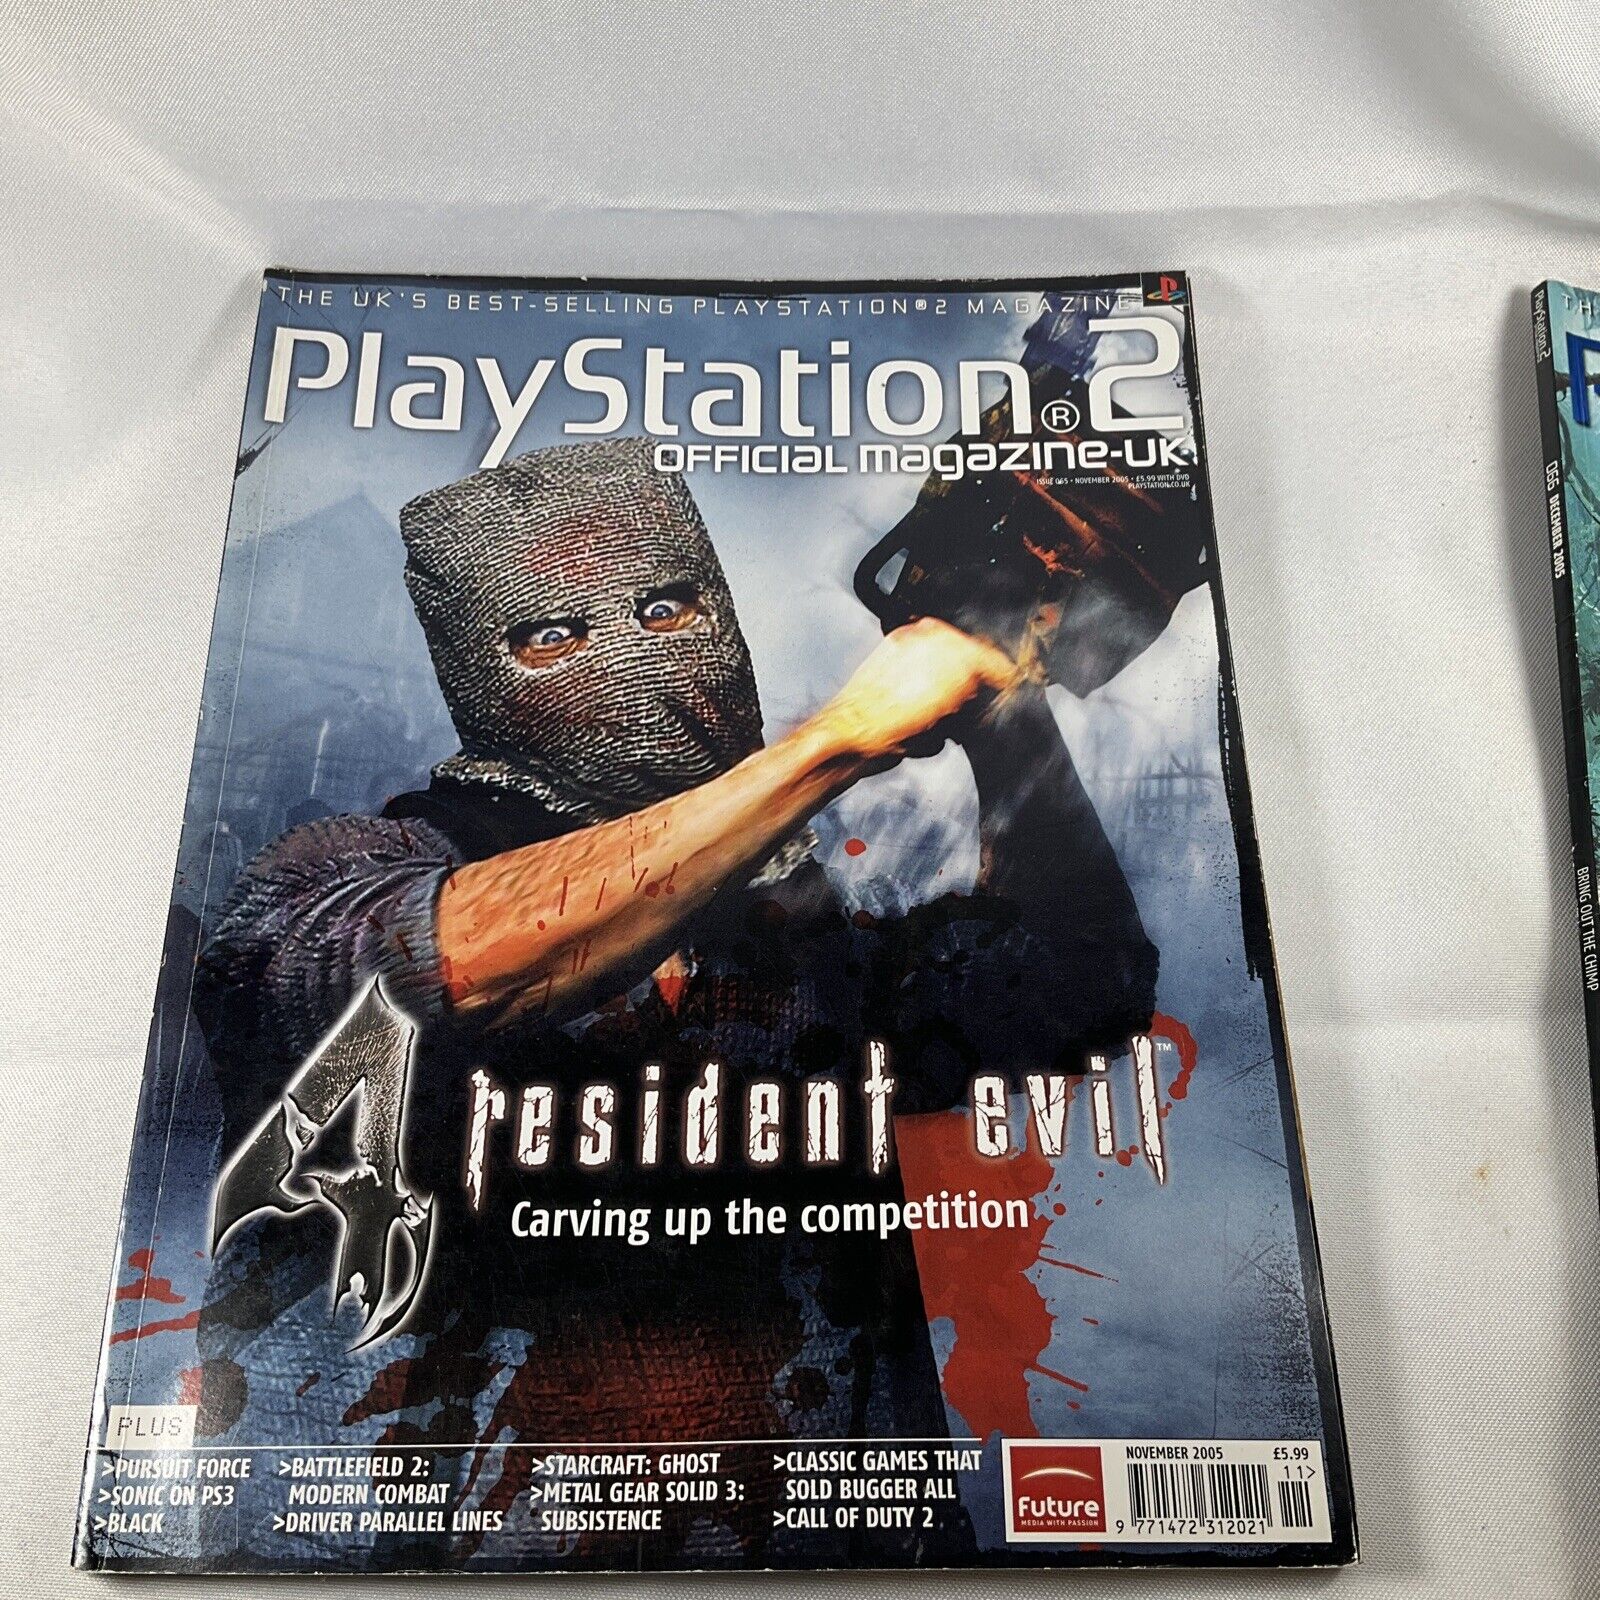 65 Official UK Playstation 2 Magazine 2005 | eBay